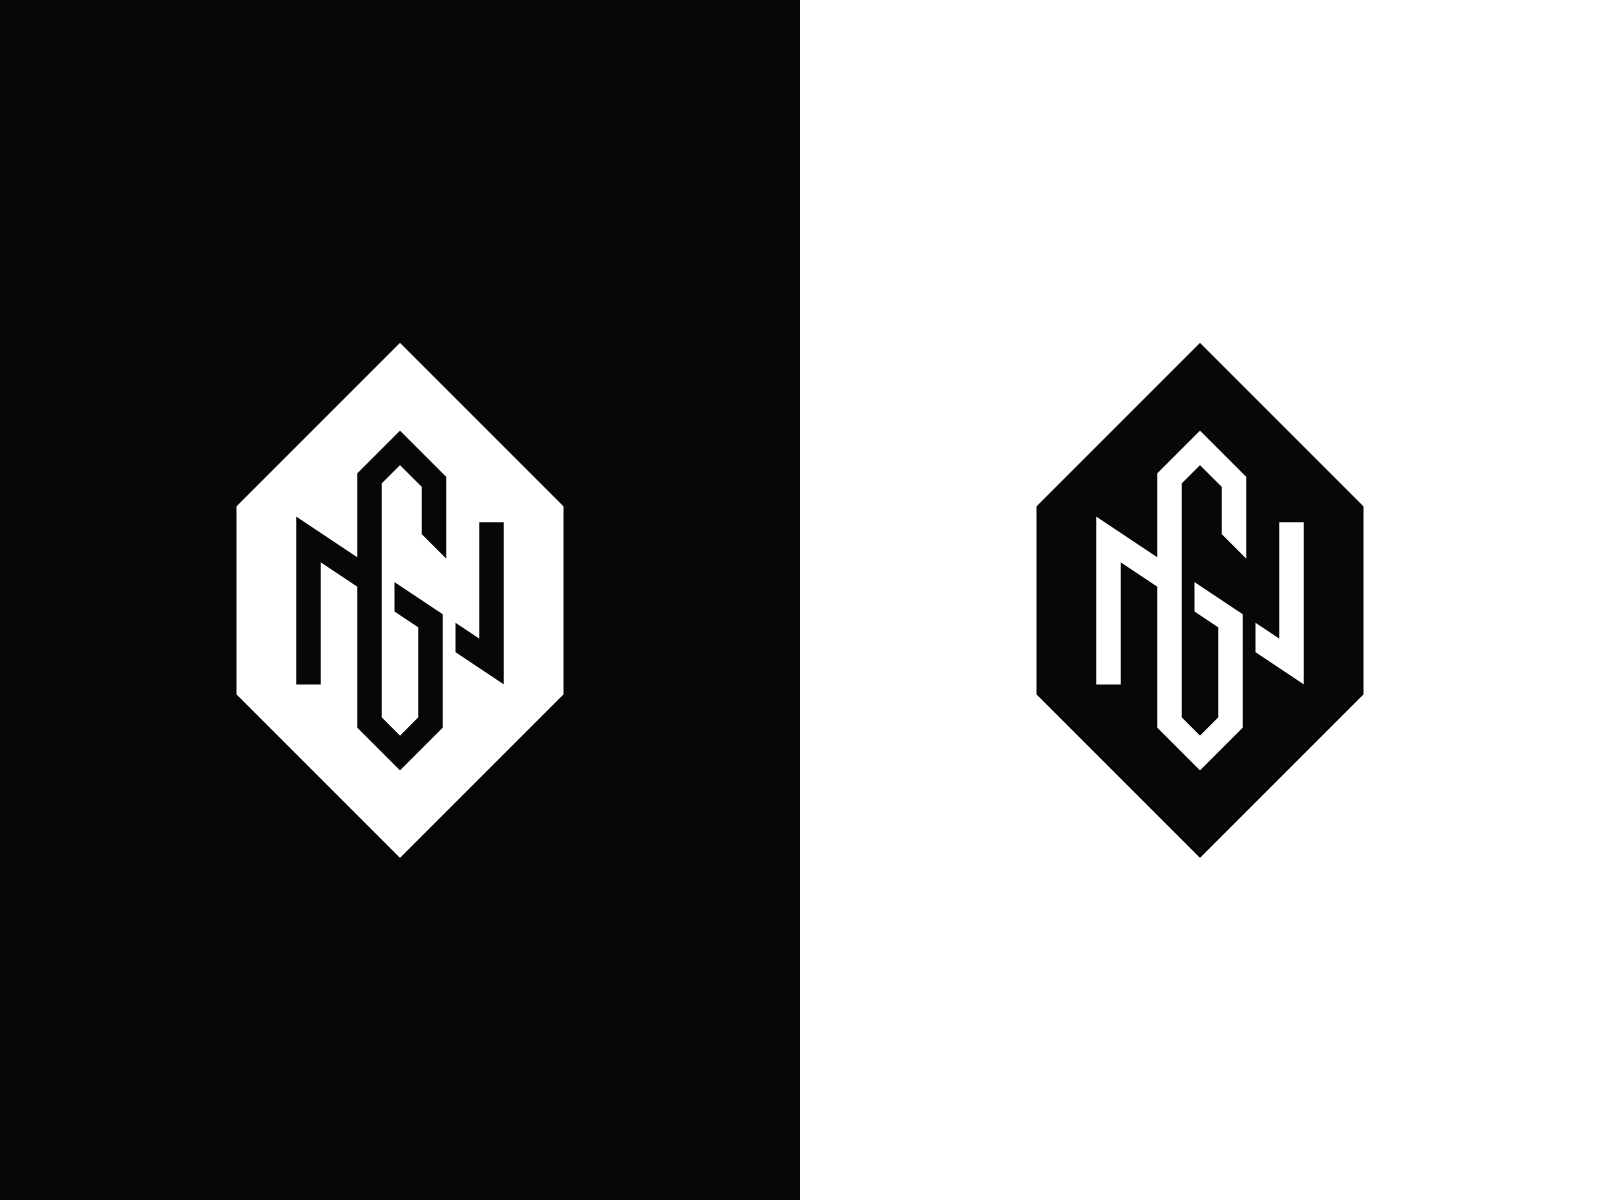 NG Monogram Logo by Kanades on Dribbble